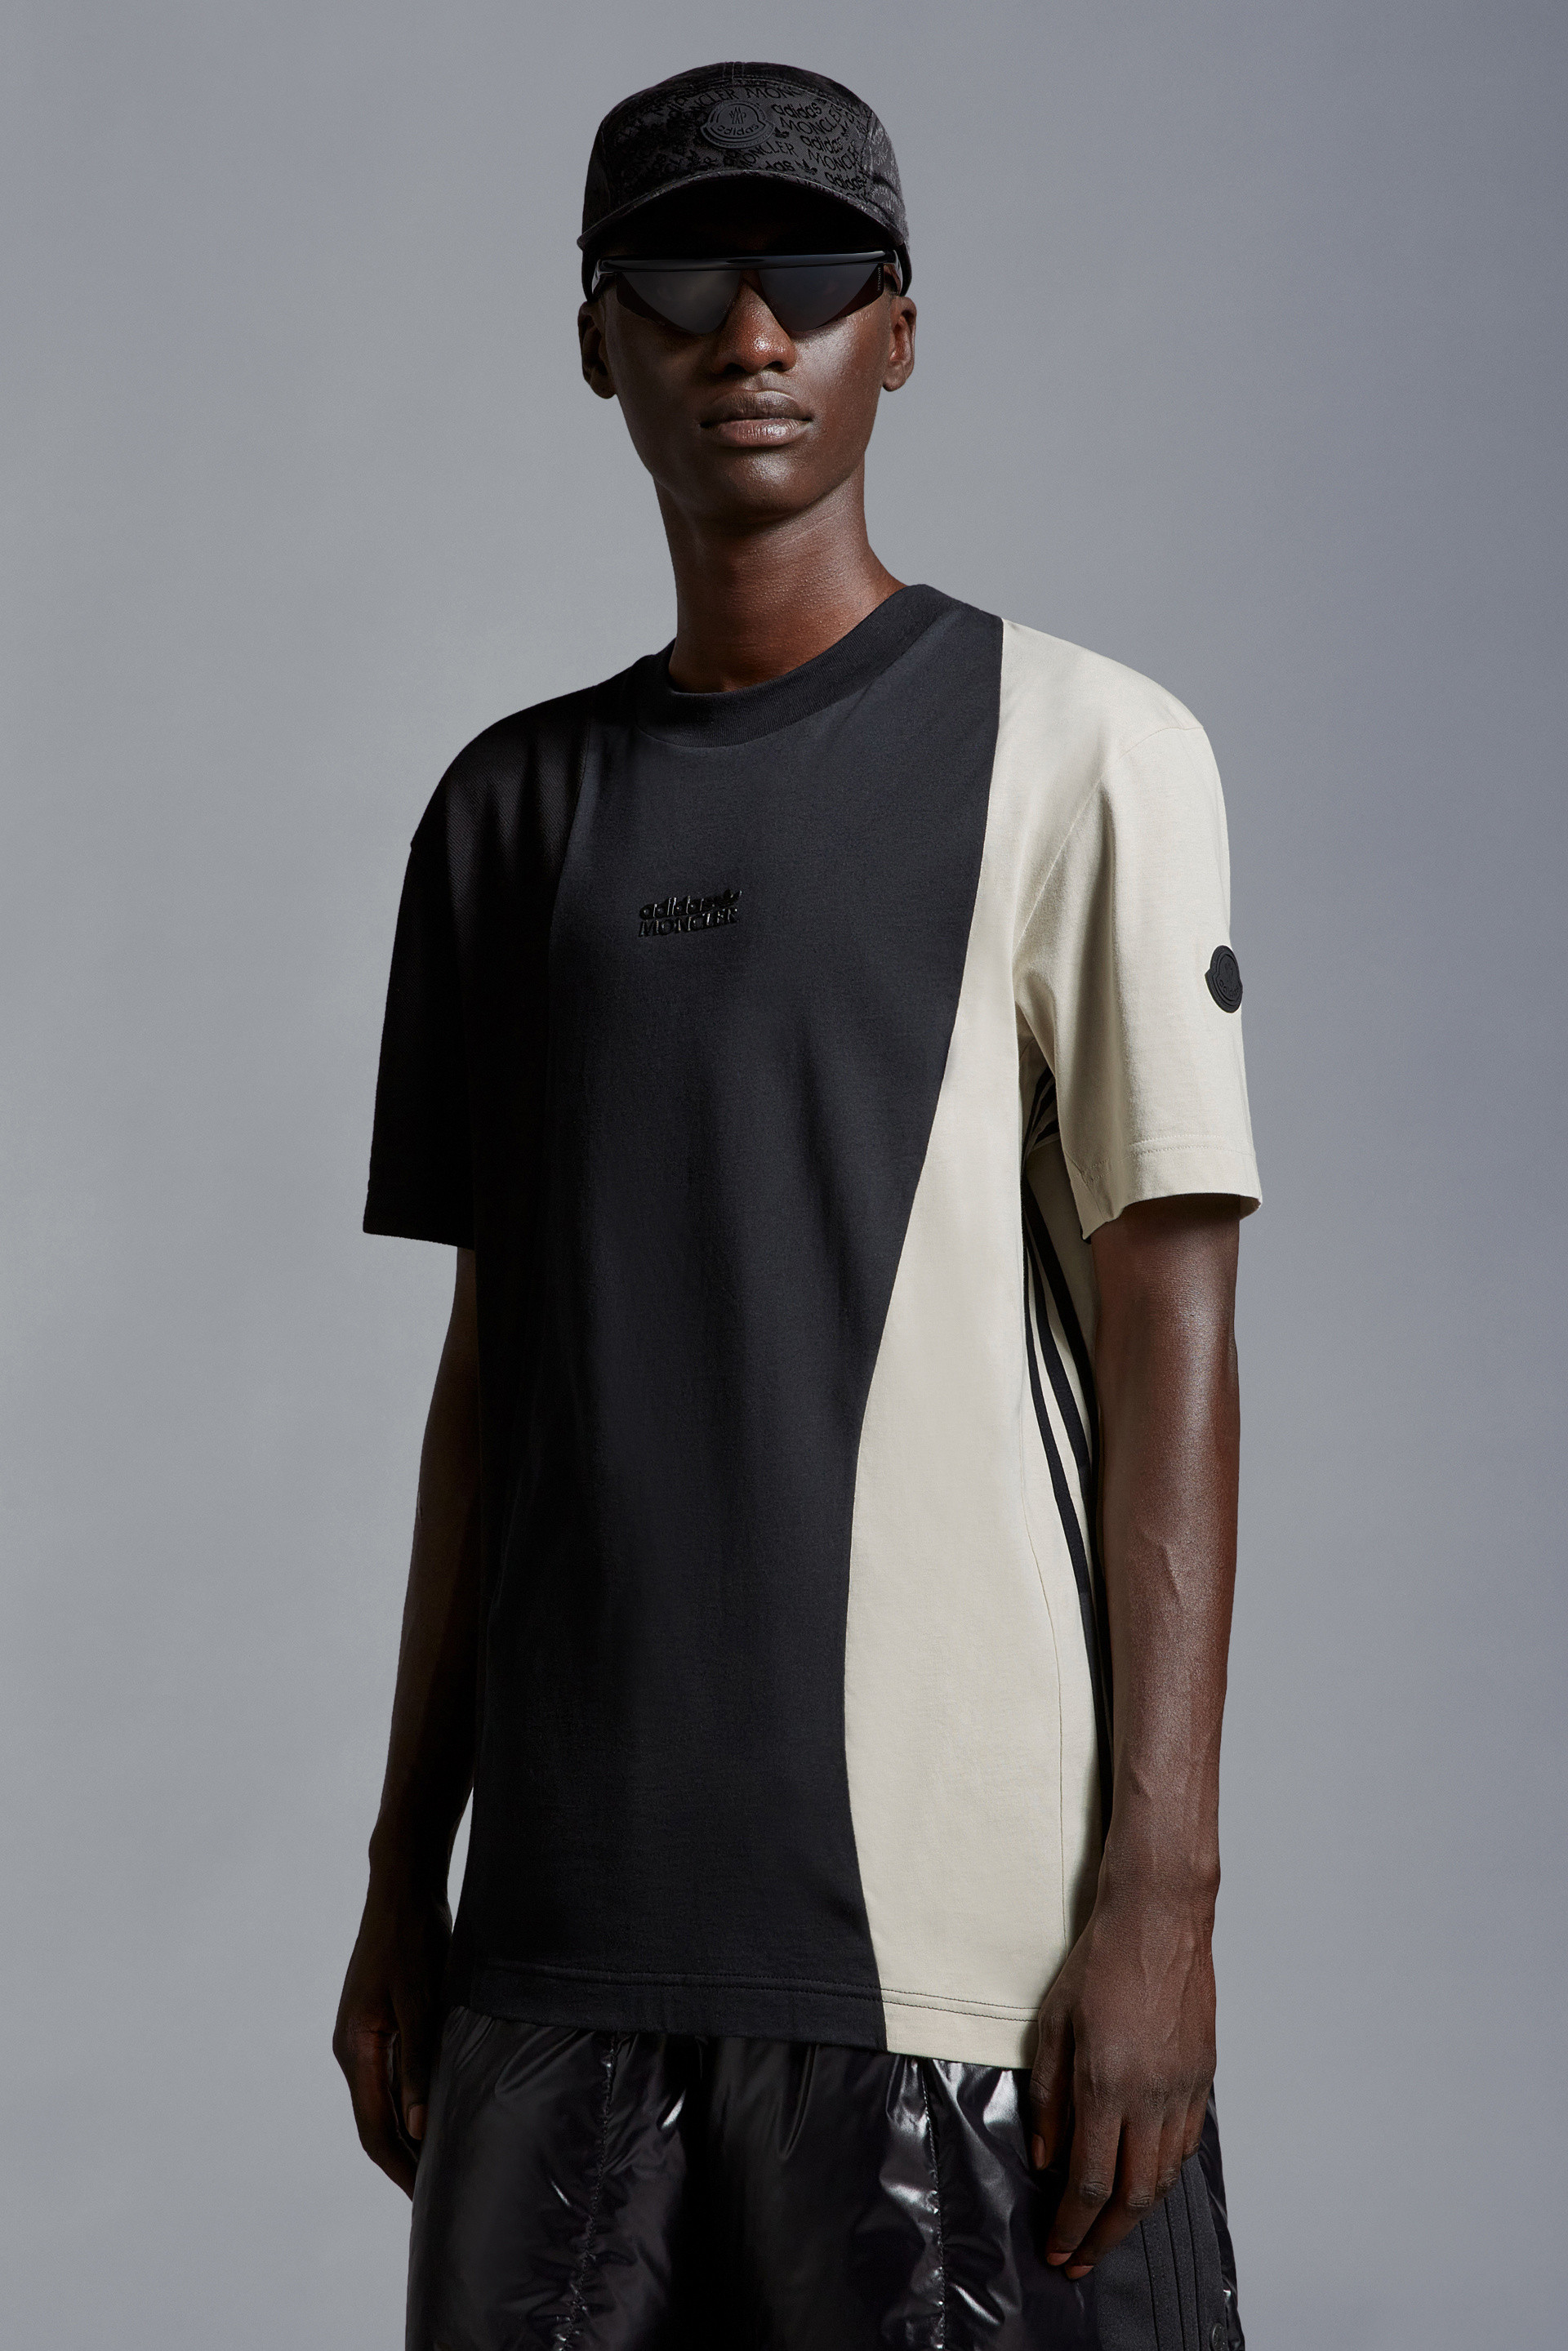 ブラック & ホワイト Tシャツ : Moncler x adidas Originals 向けの